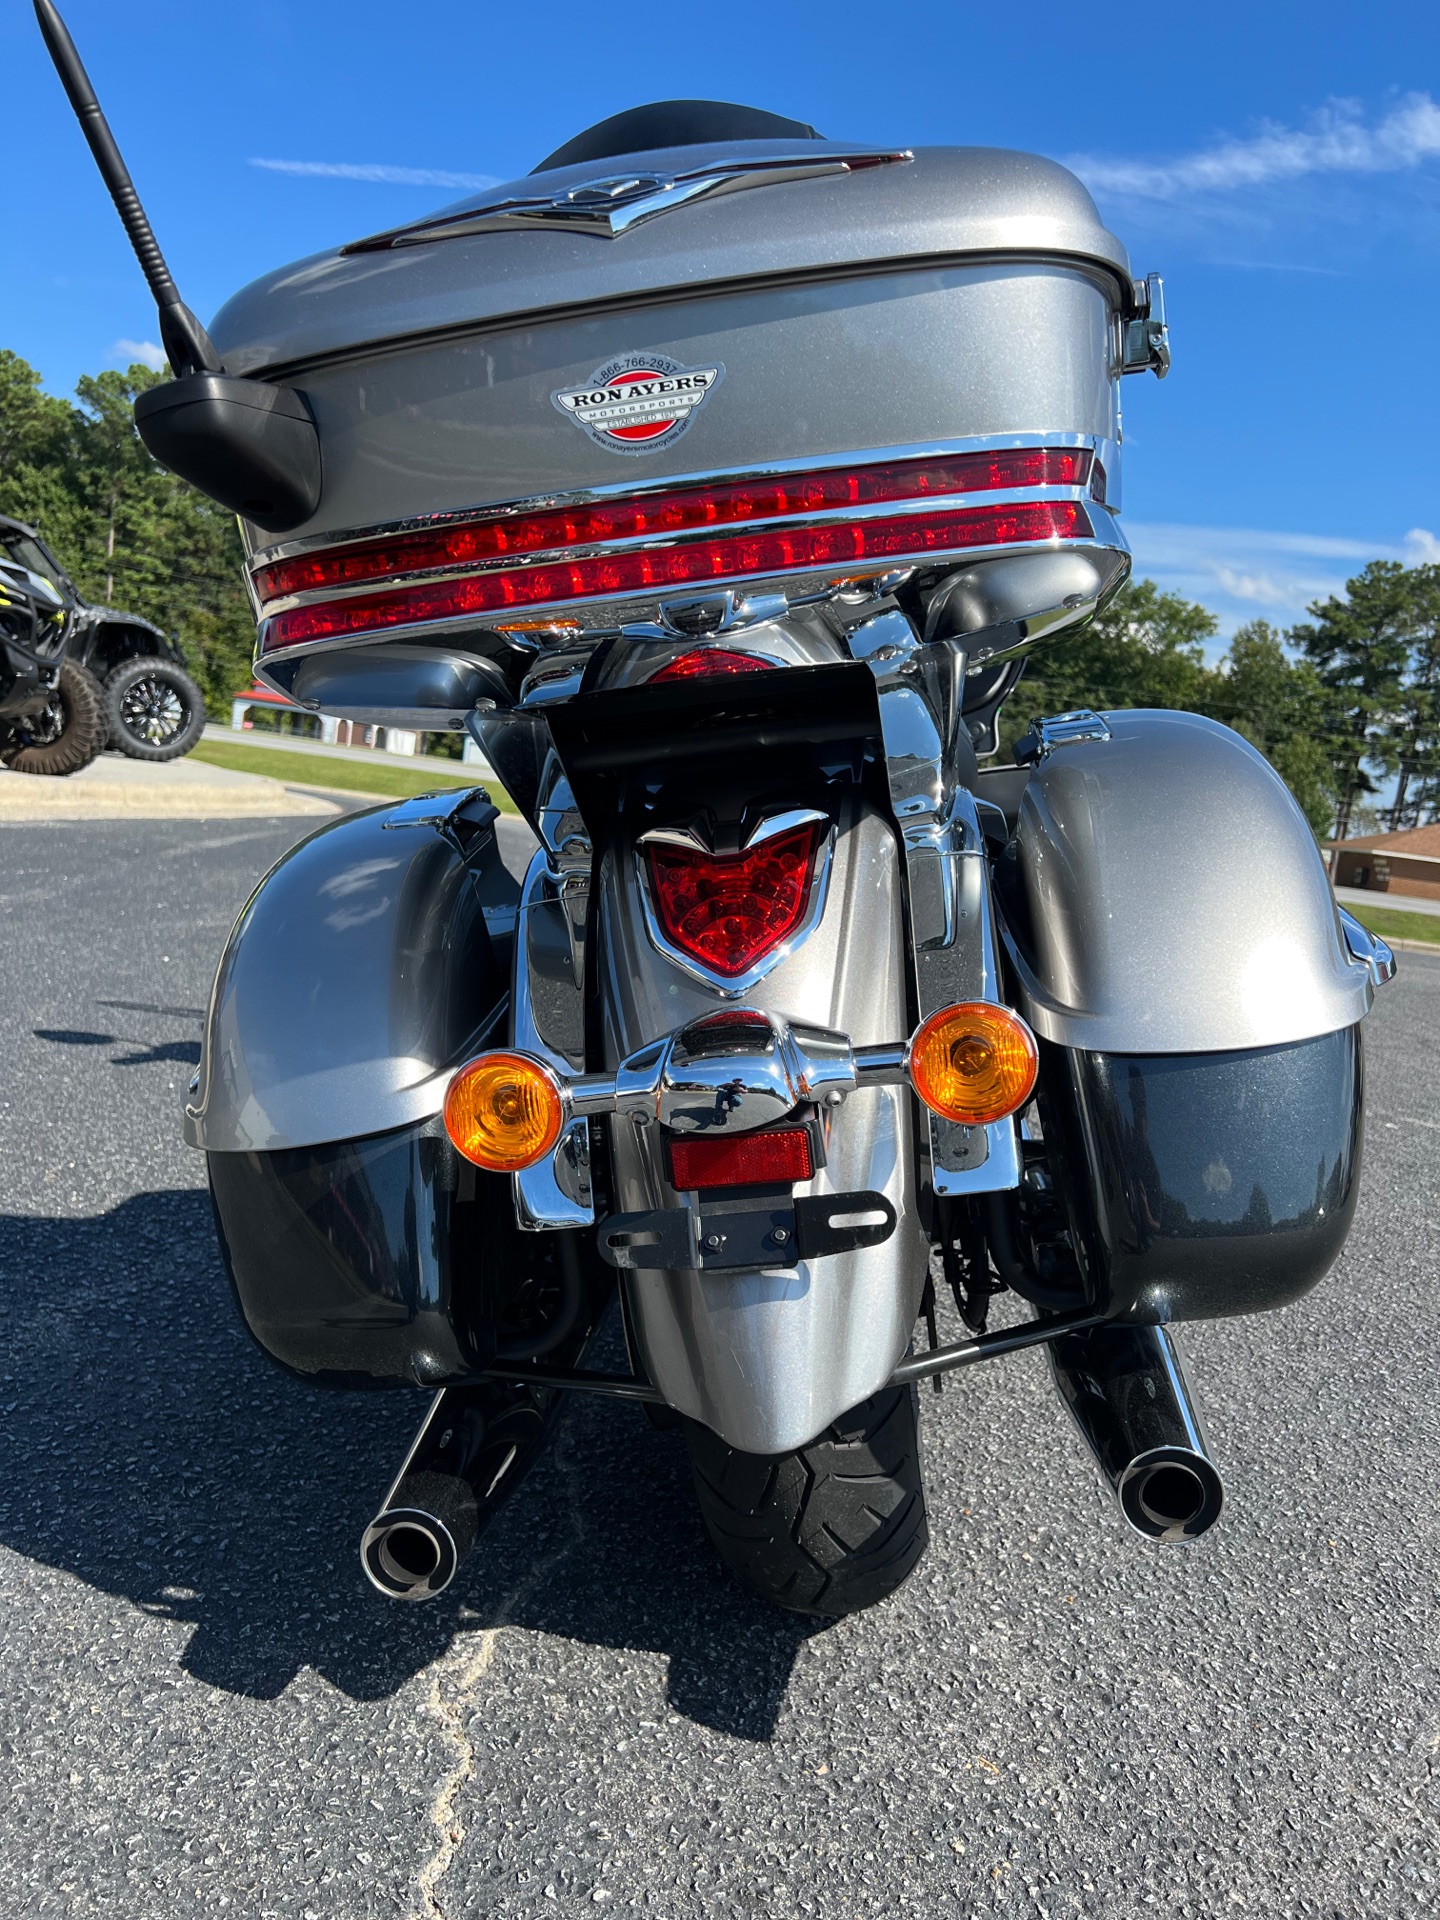 2020 Kawasaki Vulcan 1700 Voyager ABS in Greenville, North Carolina - Photo 31